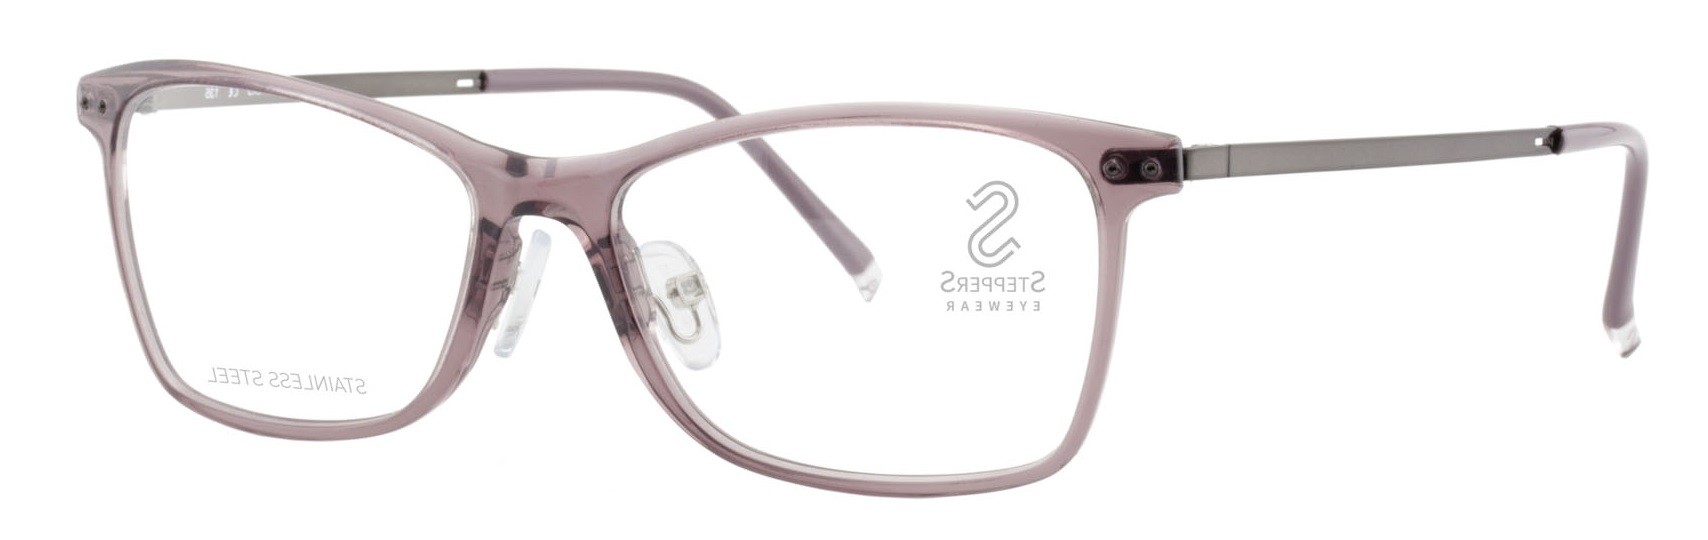 Stepper 60019 F821 - Oculos de Grau